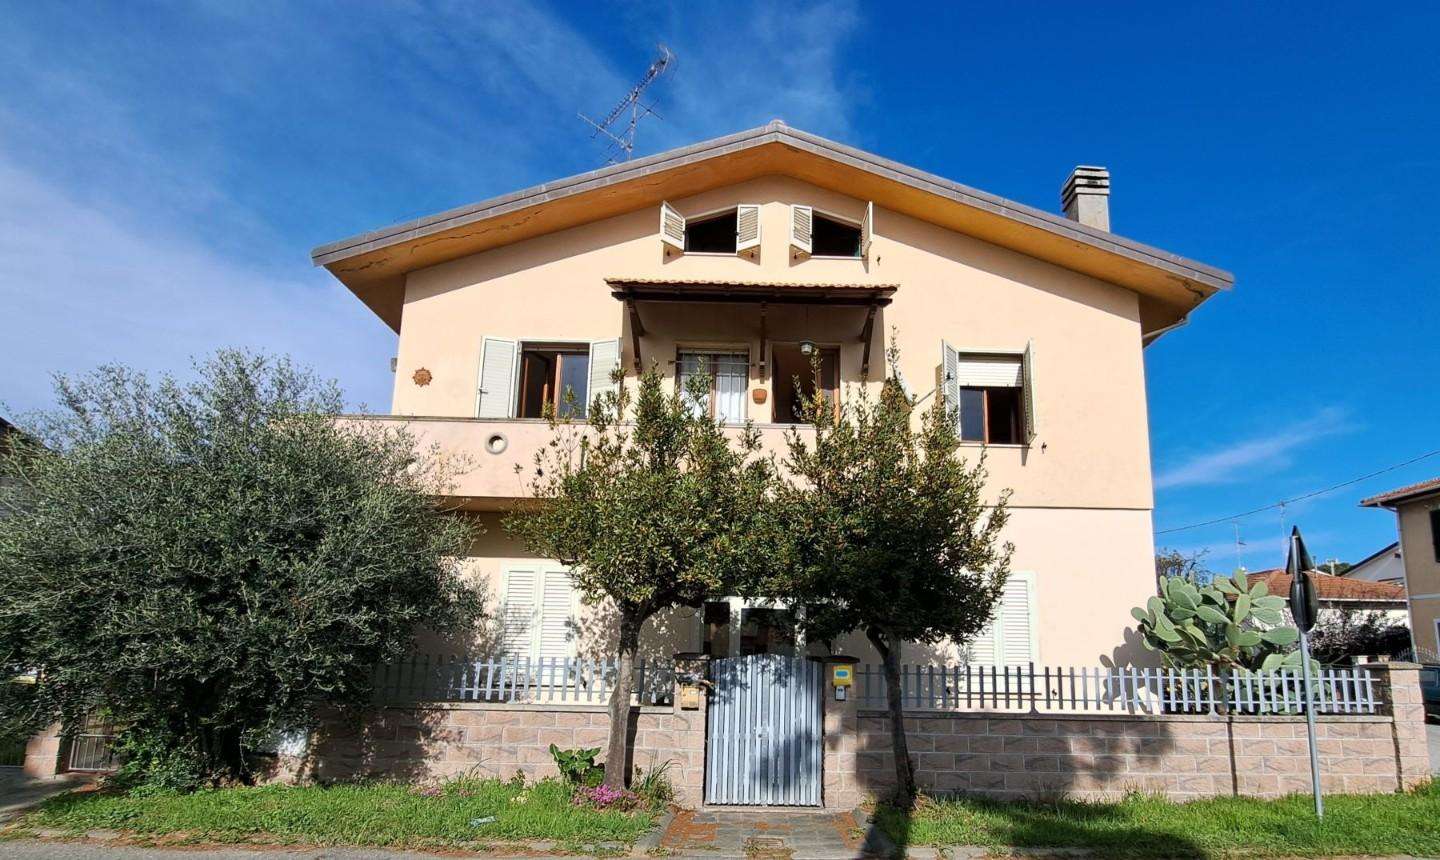 Casa Bi - Trifamiliare in Vendita a Rosignano Marittimo Via Daniele Manin,